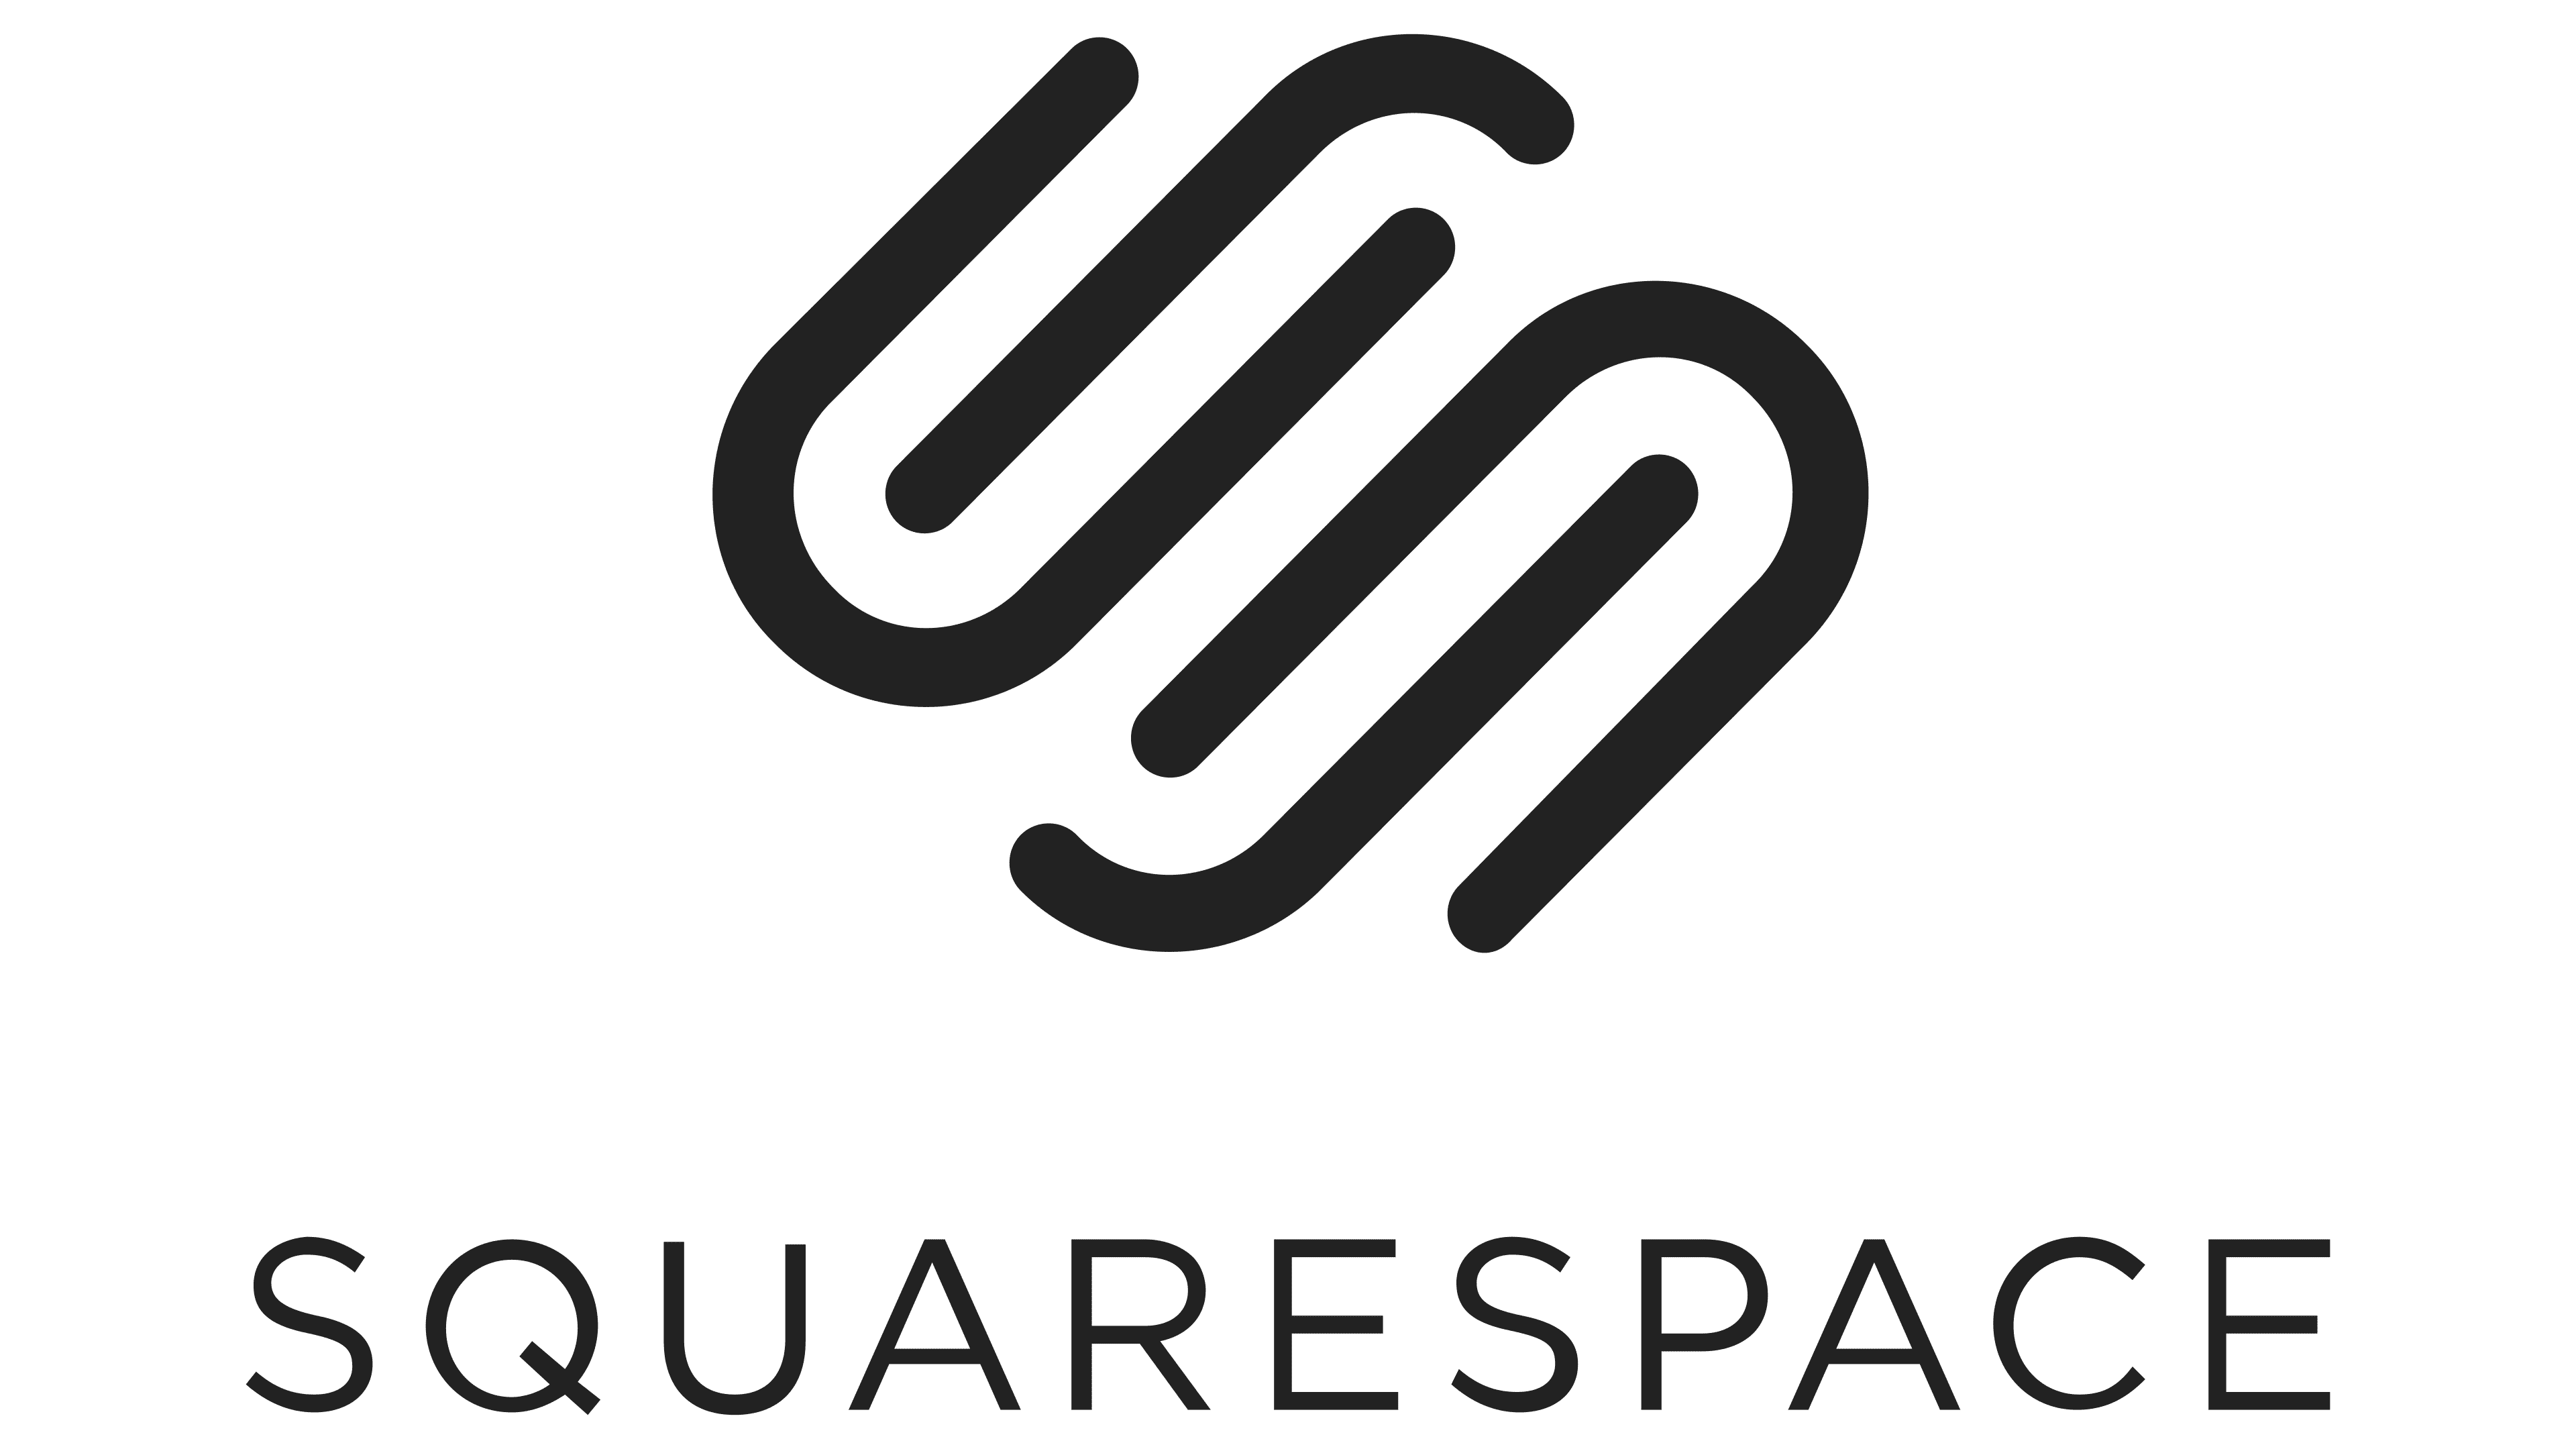 logo squarespace